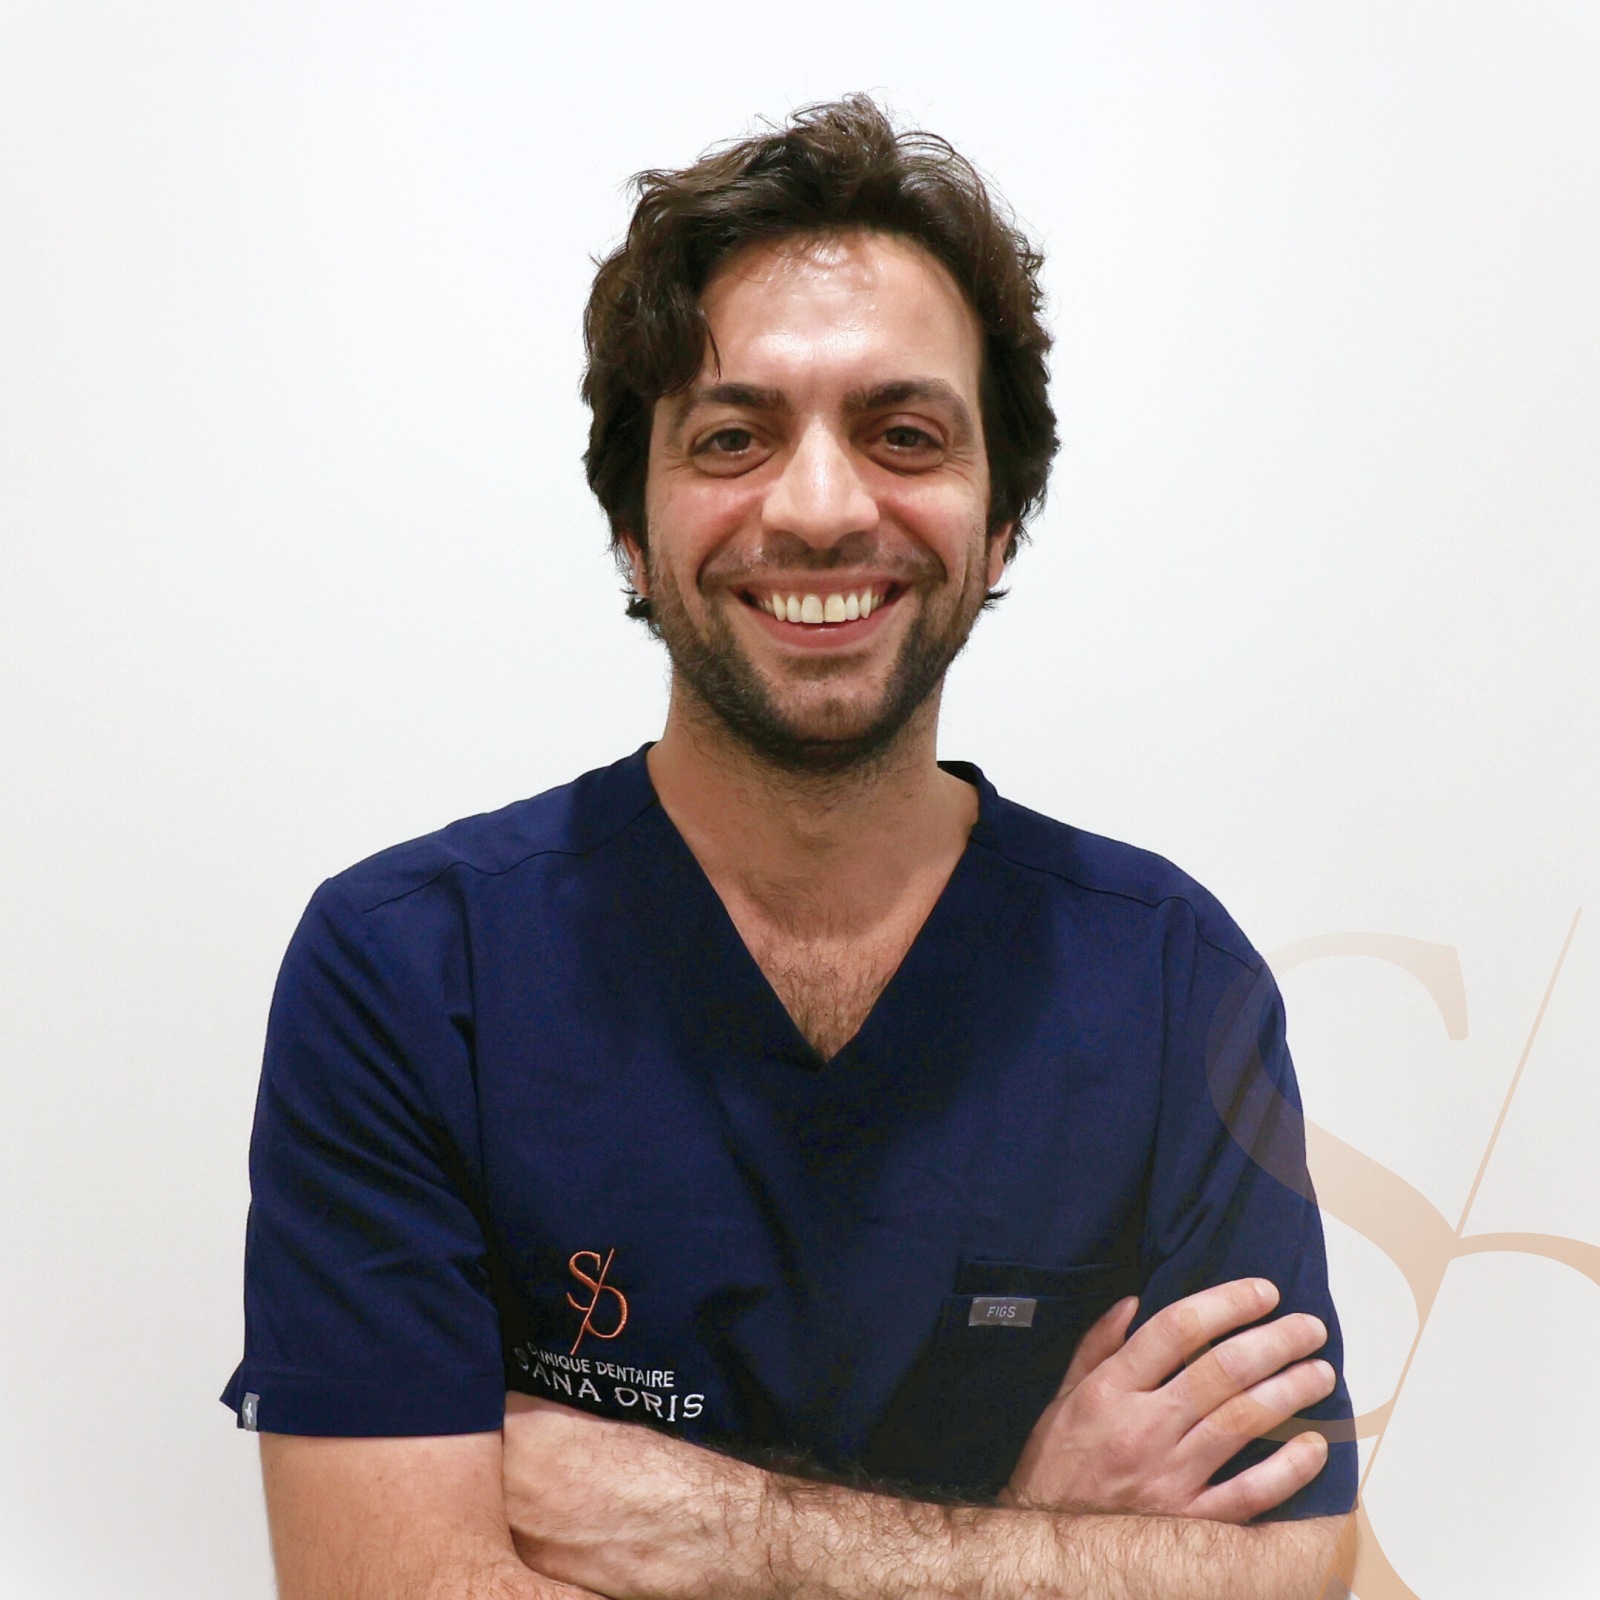 Dr Russo | Equipe médicale | Clinique dentaire Sana Oris de Roosevelt | Chirurgiens dentistes | Paris 8